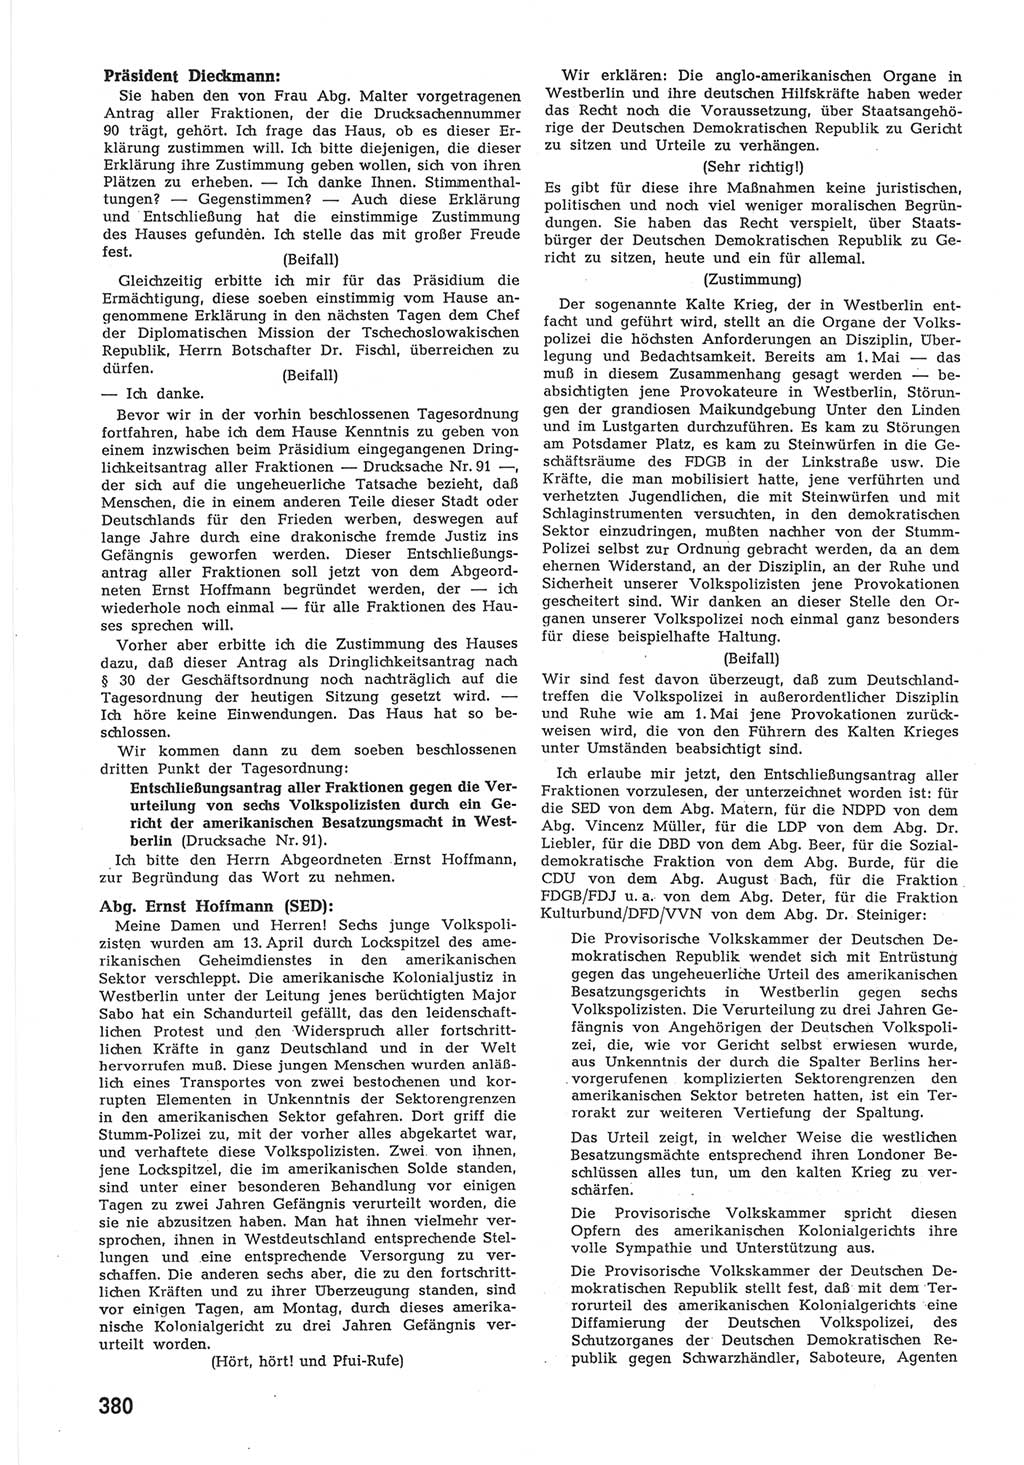 Provisorische Volkskammer (VK) der Deutschen Demokratischen Republik (DDR) 1949-1950, Dokument 398 (Prov. VK DDR 1949-1950, Dok. 398)